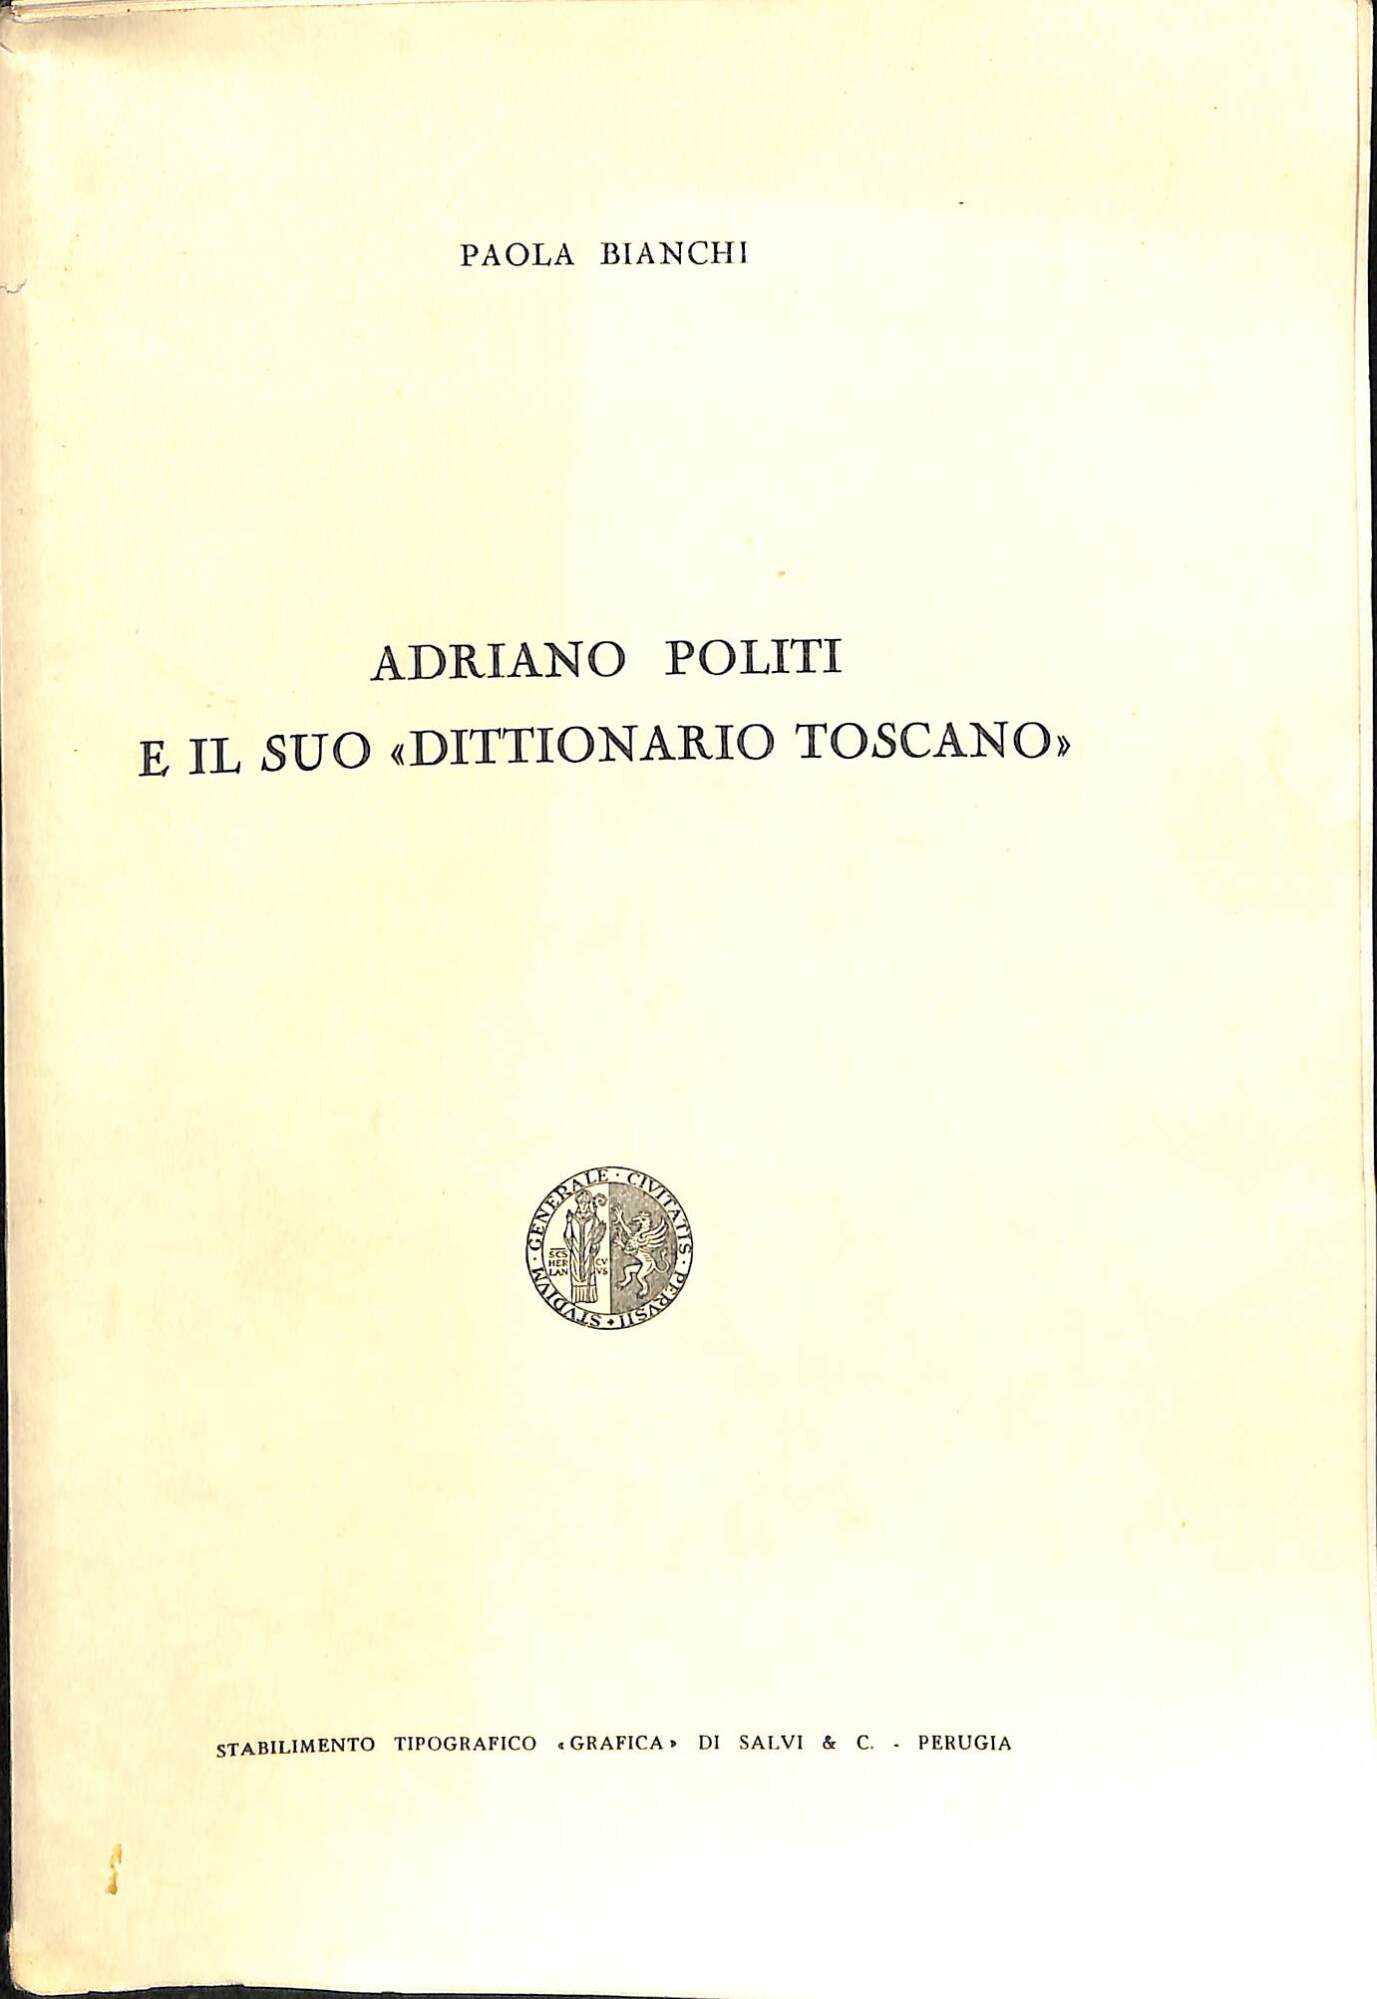 Adriano Politi e il suo Dittionario toscano